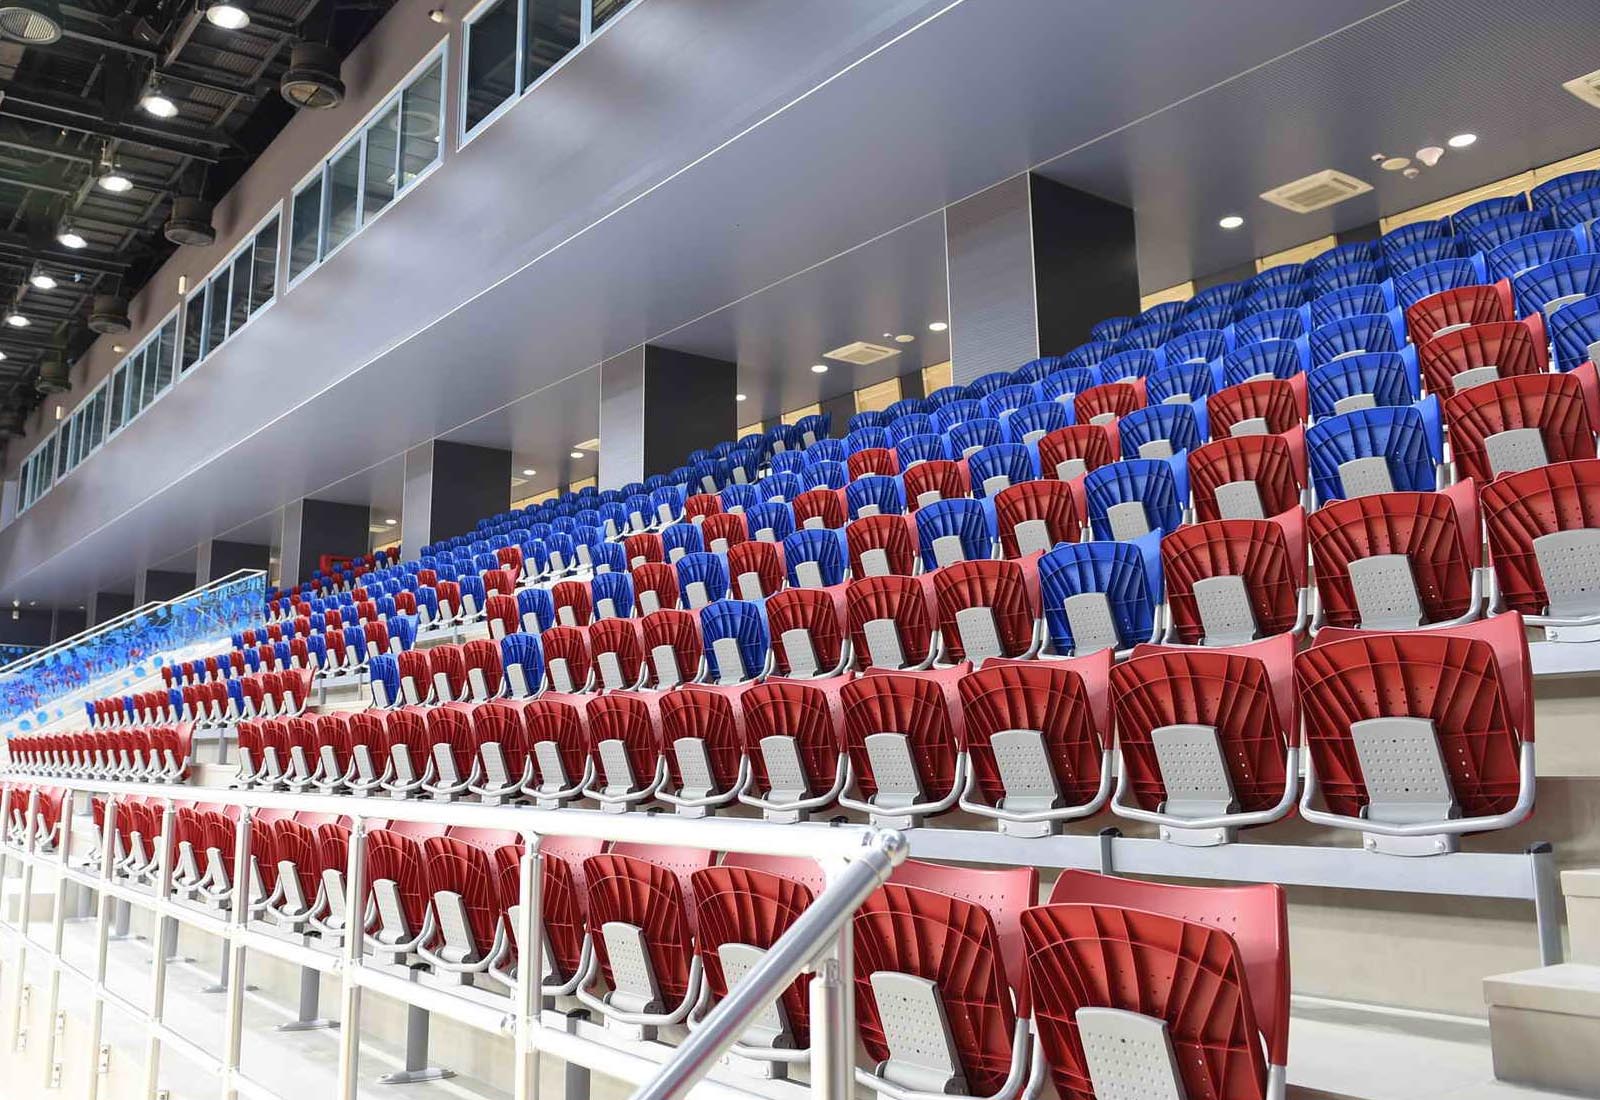 Baku sport hall - Details of the grandstands